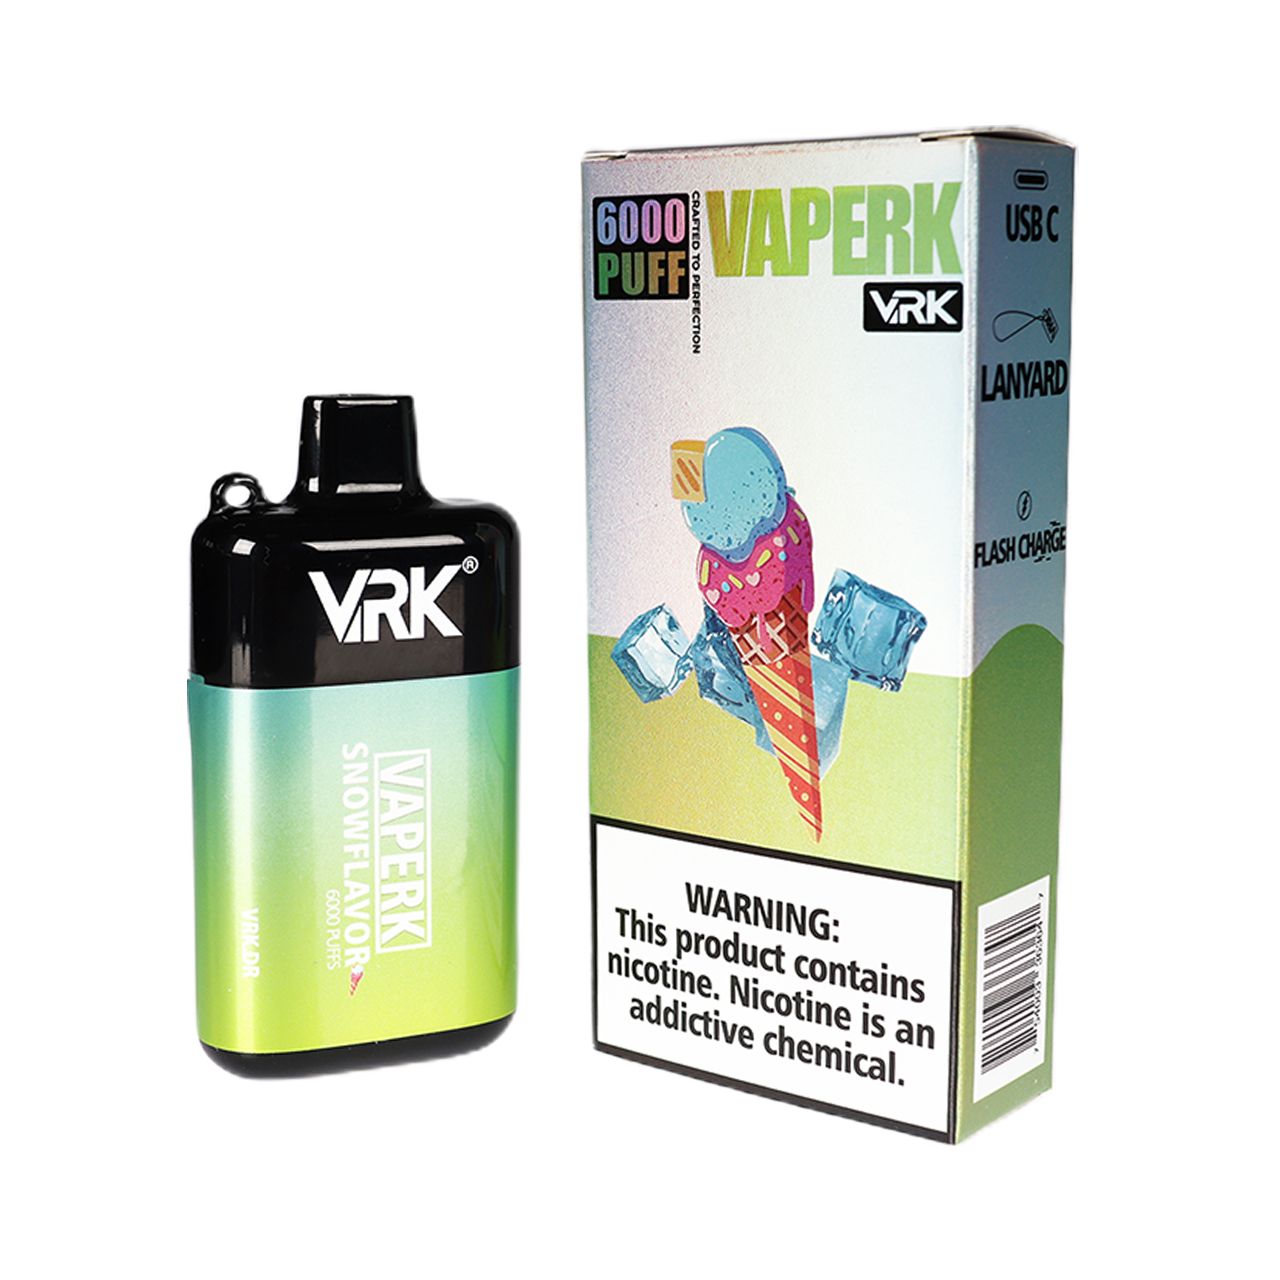 VRK Vaperk 6000 Puff Disposable